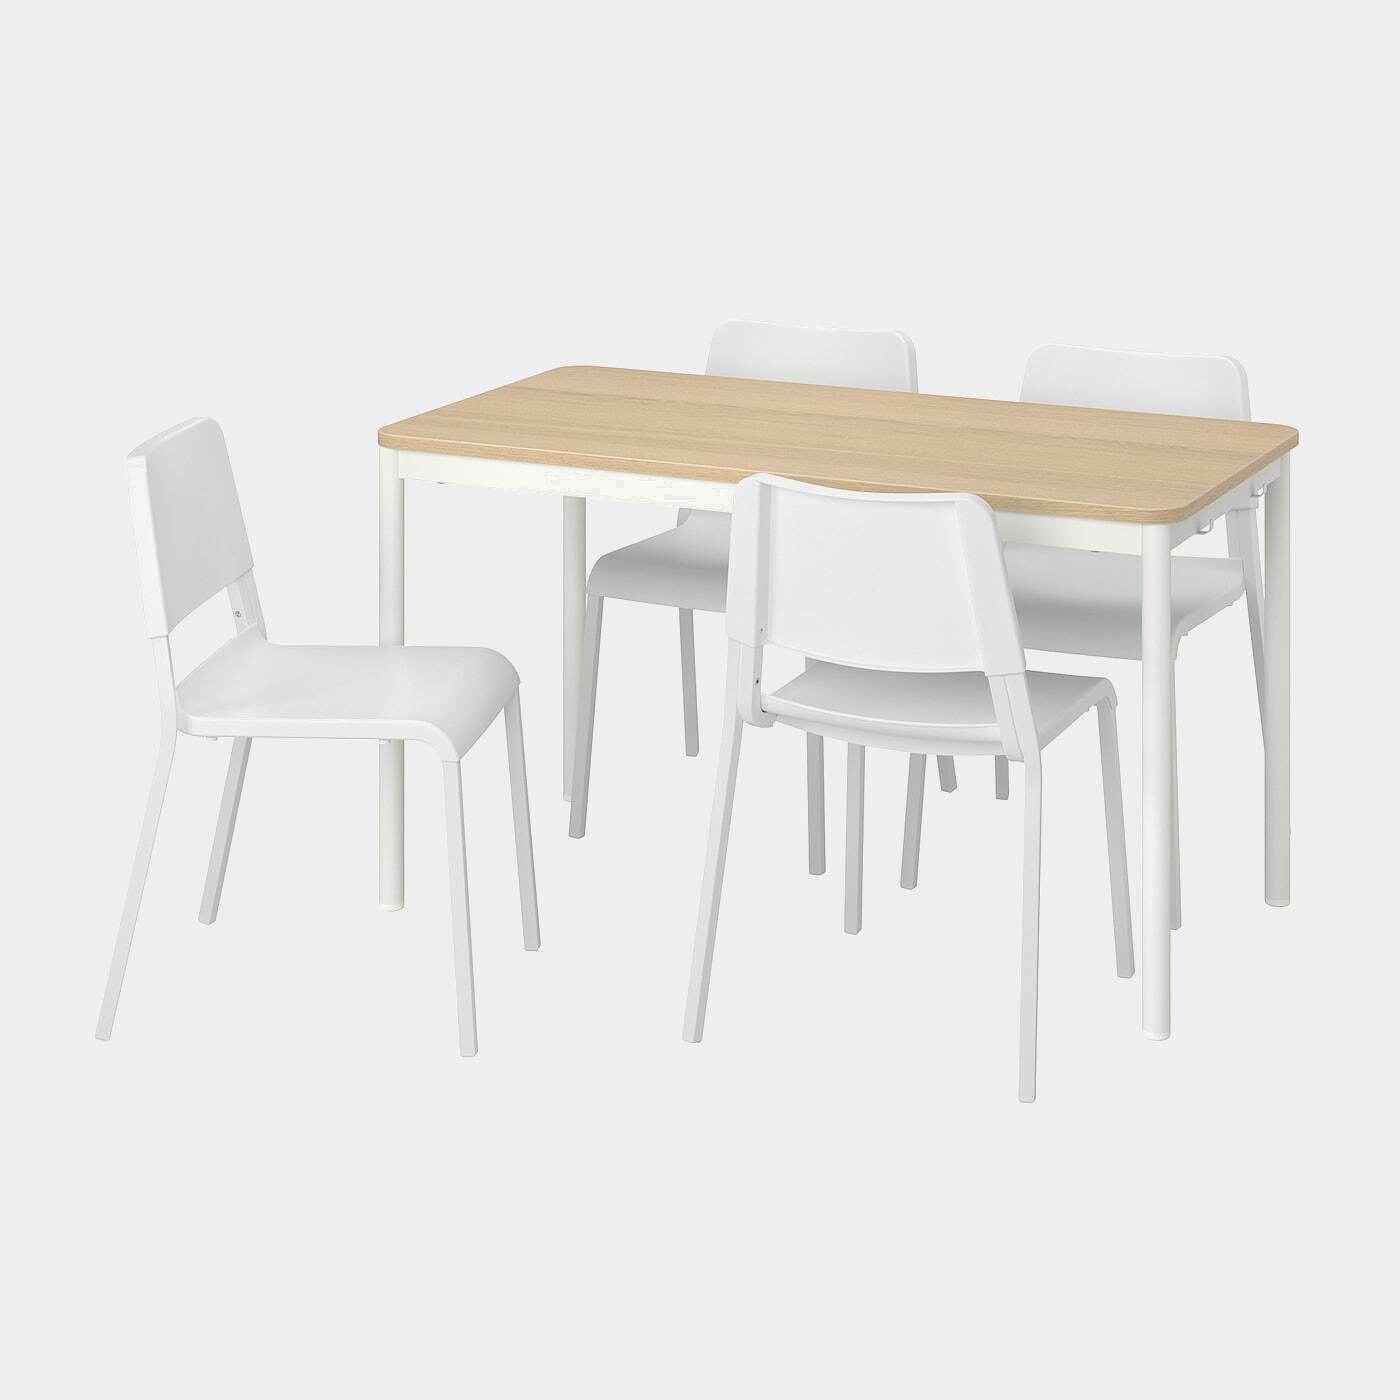 TOMMARYD / TEODORES Tisch und 4 Stühle  -  - Möbel Ideen für dein Zuhause von Home Trends. Möbel Trends von Social Media Influencer für dein Skandi Zuhause.